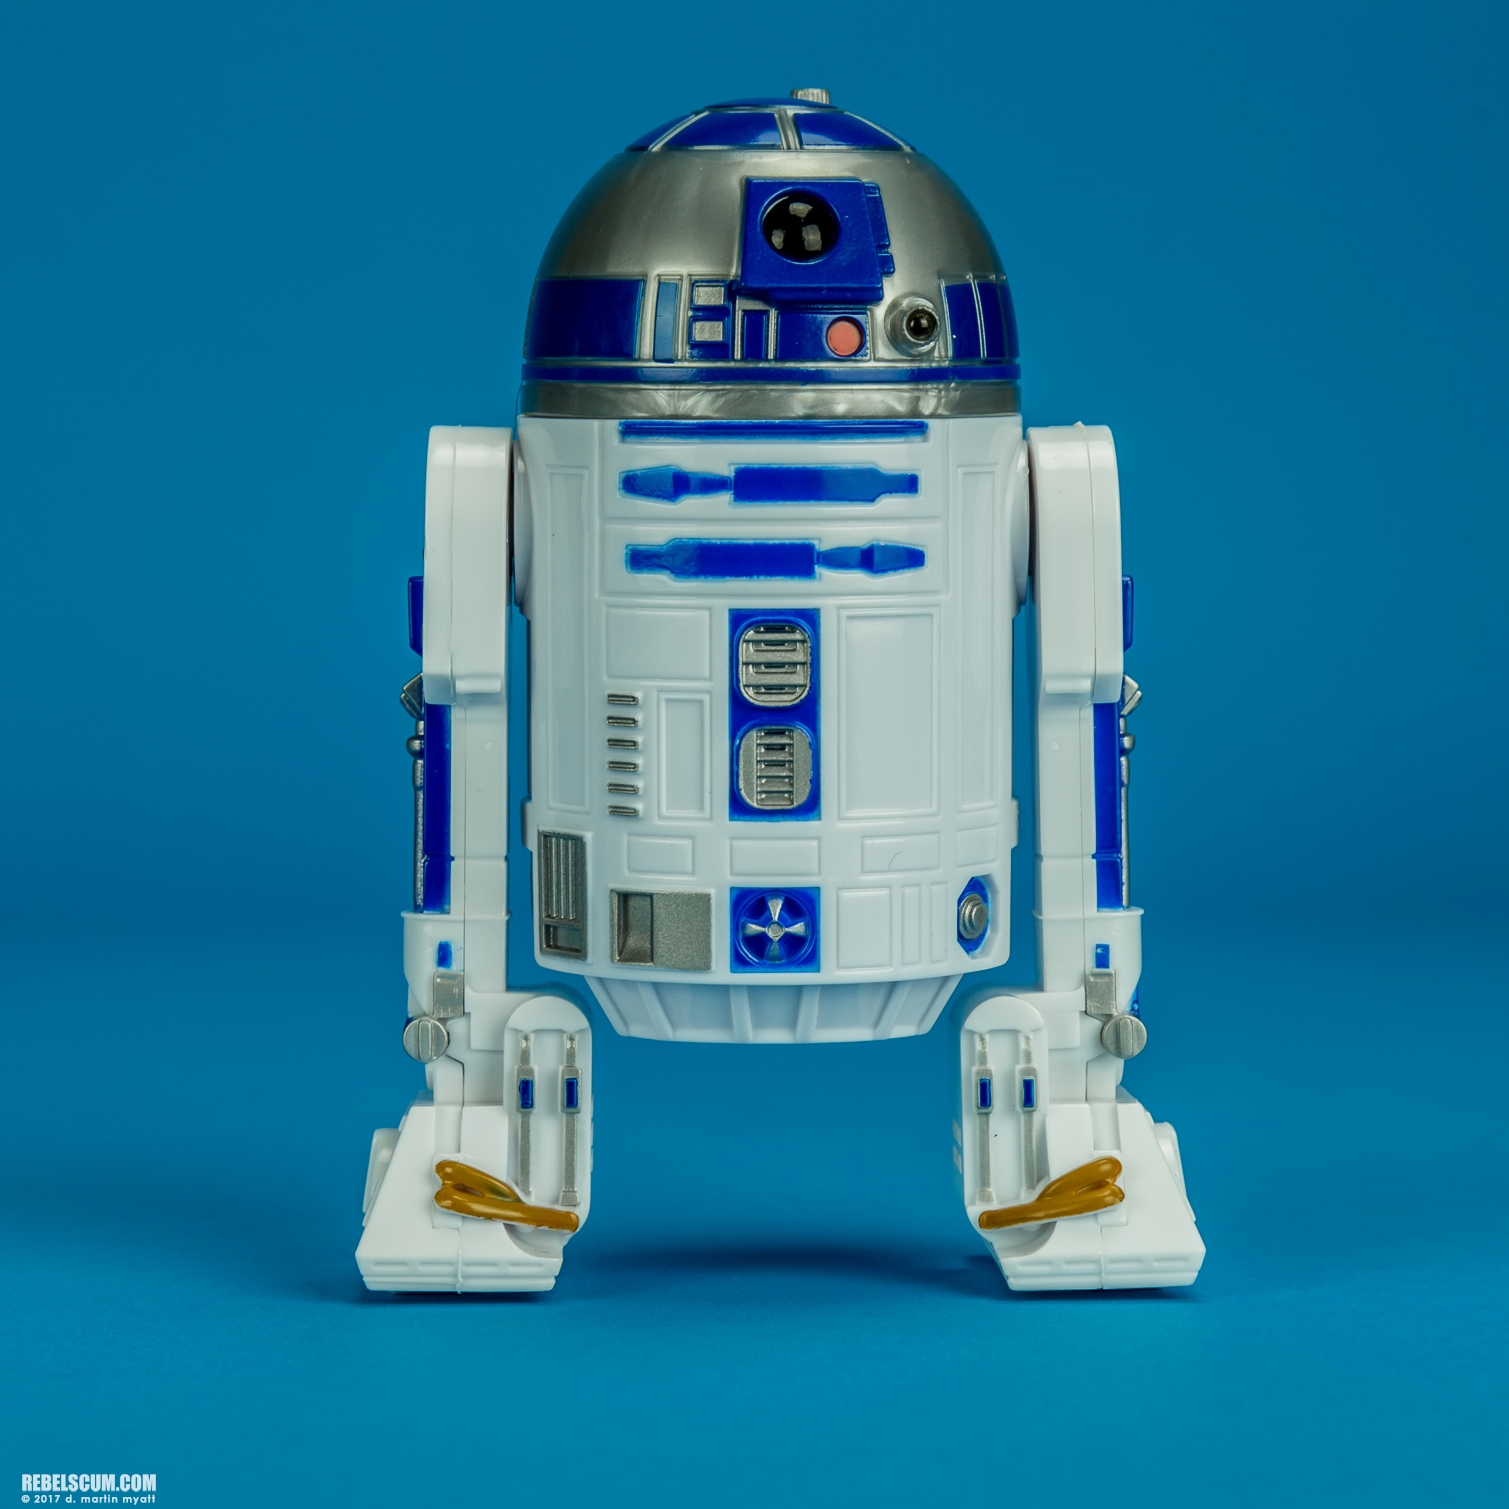 Forces-Of-Destiny-Princess-Leia-Organa-R2-D2-005.jpg